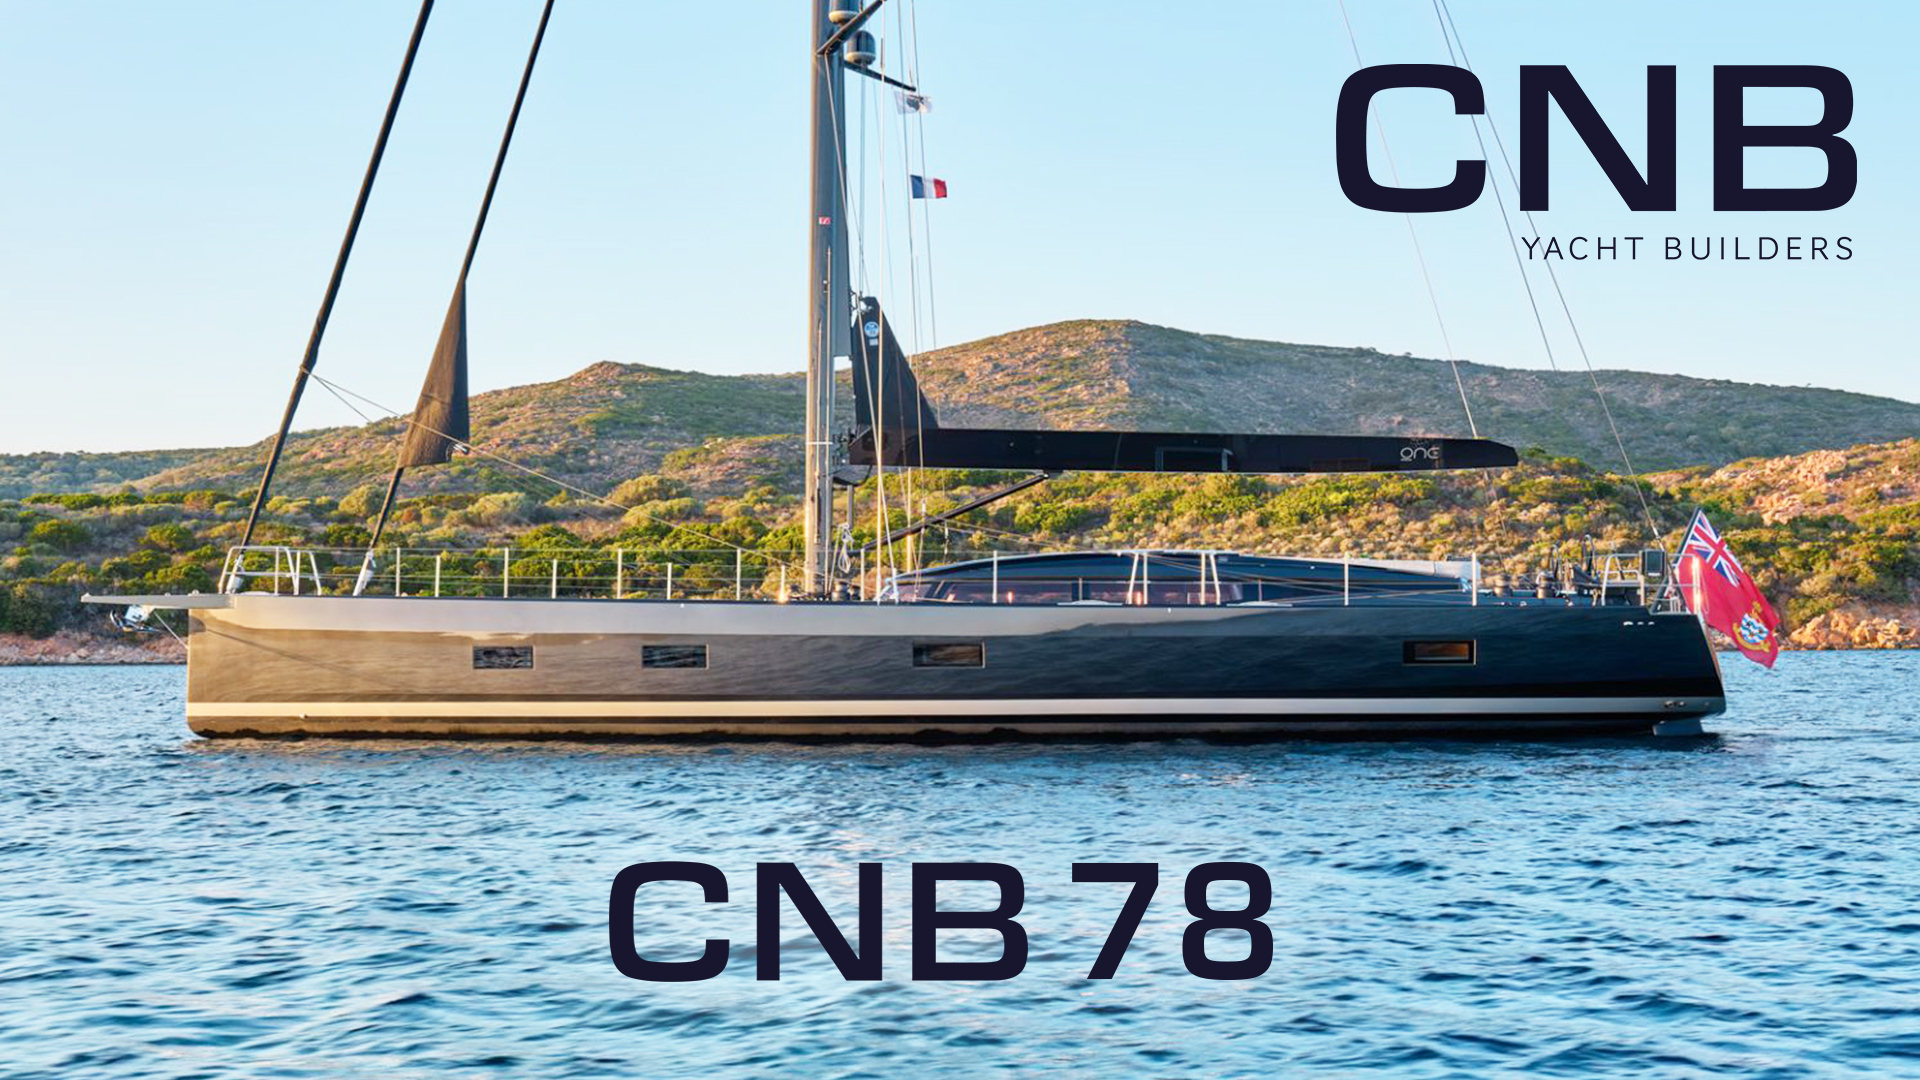 Yelkenli yatlar için yeni referans noktası: CNB 78